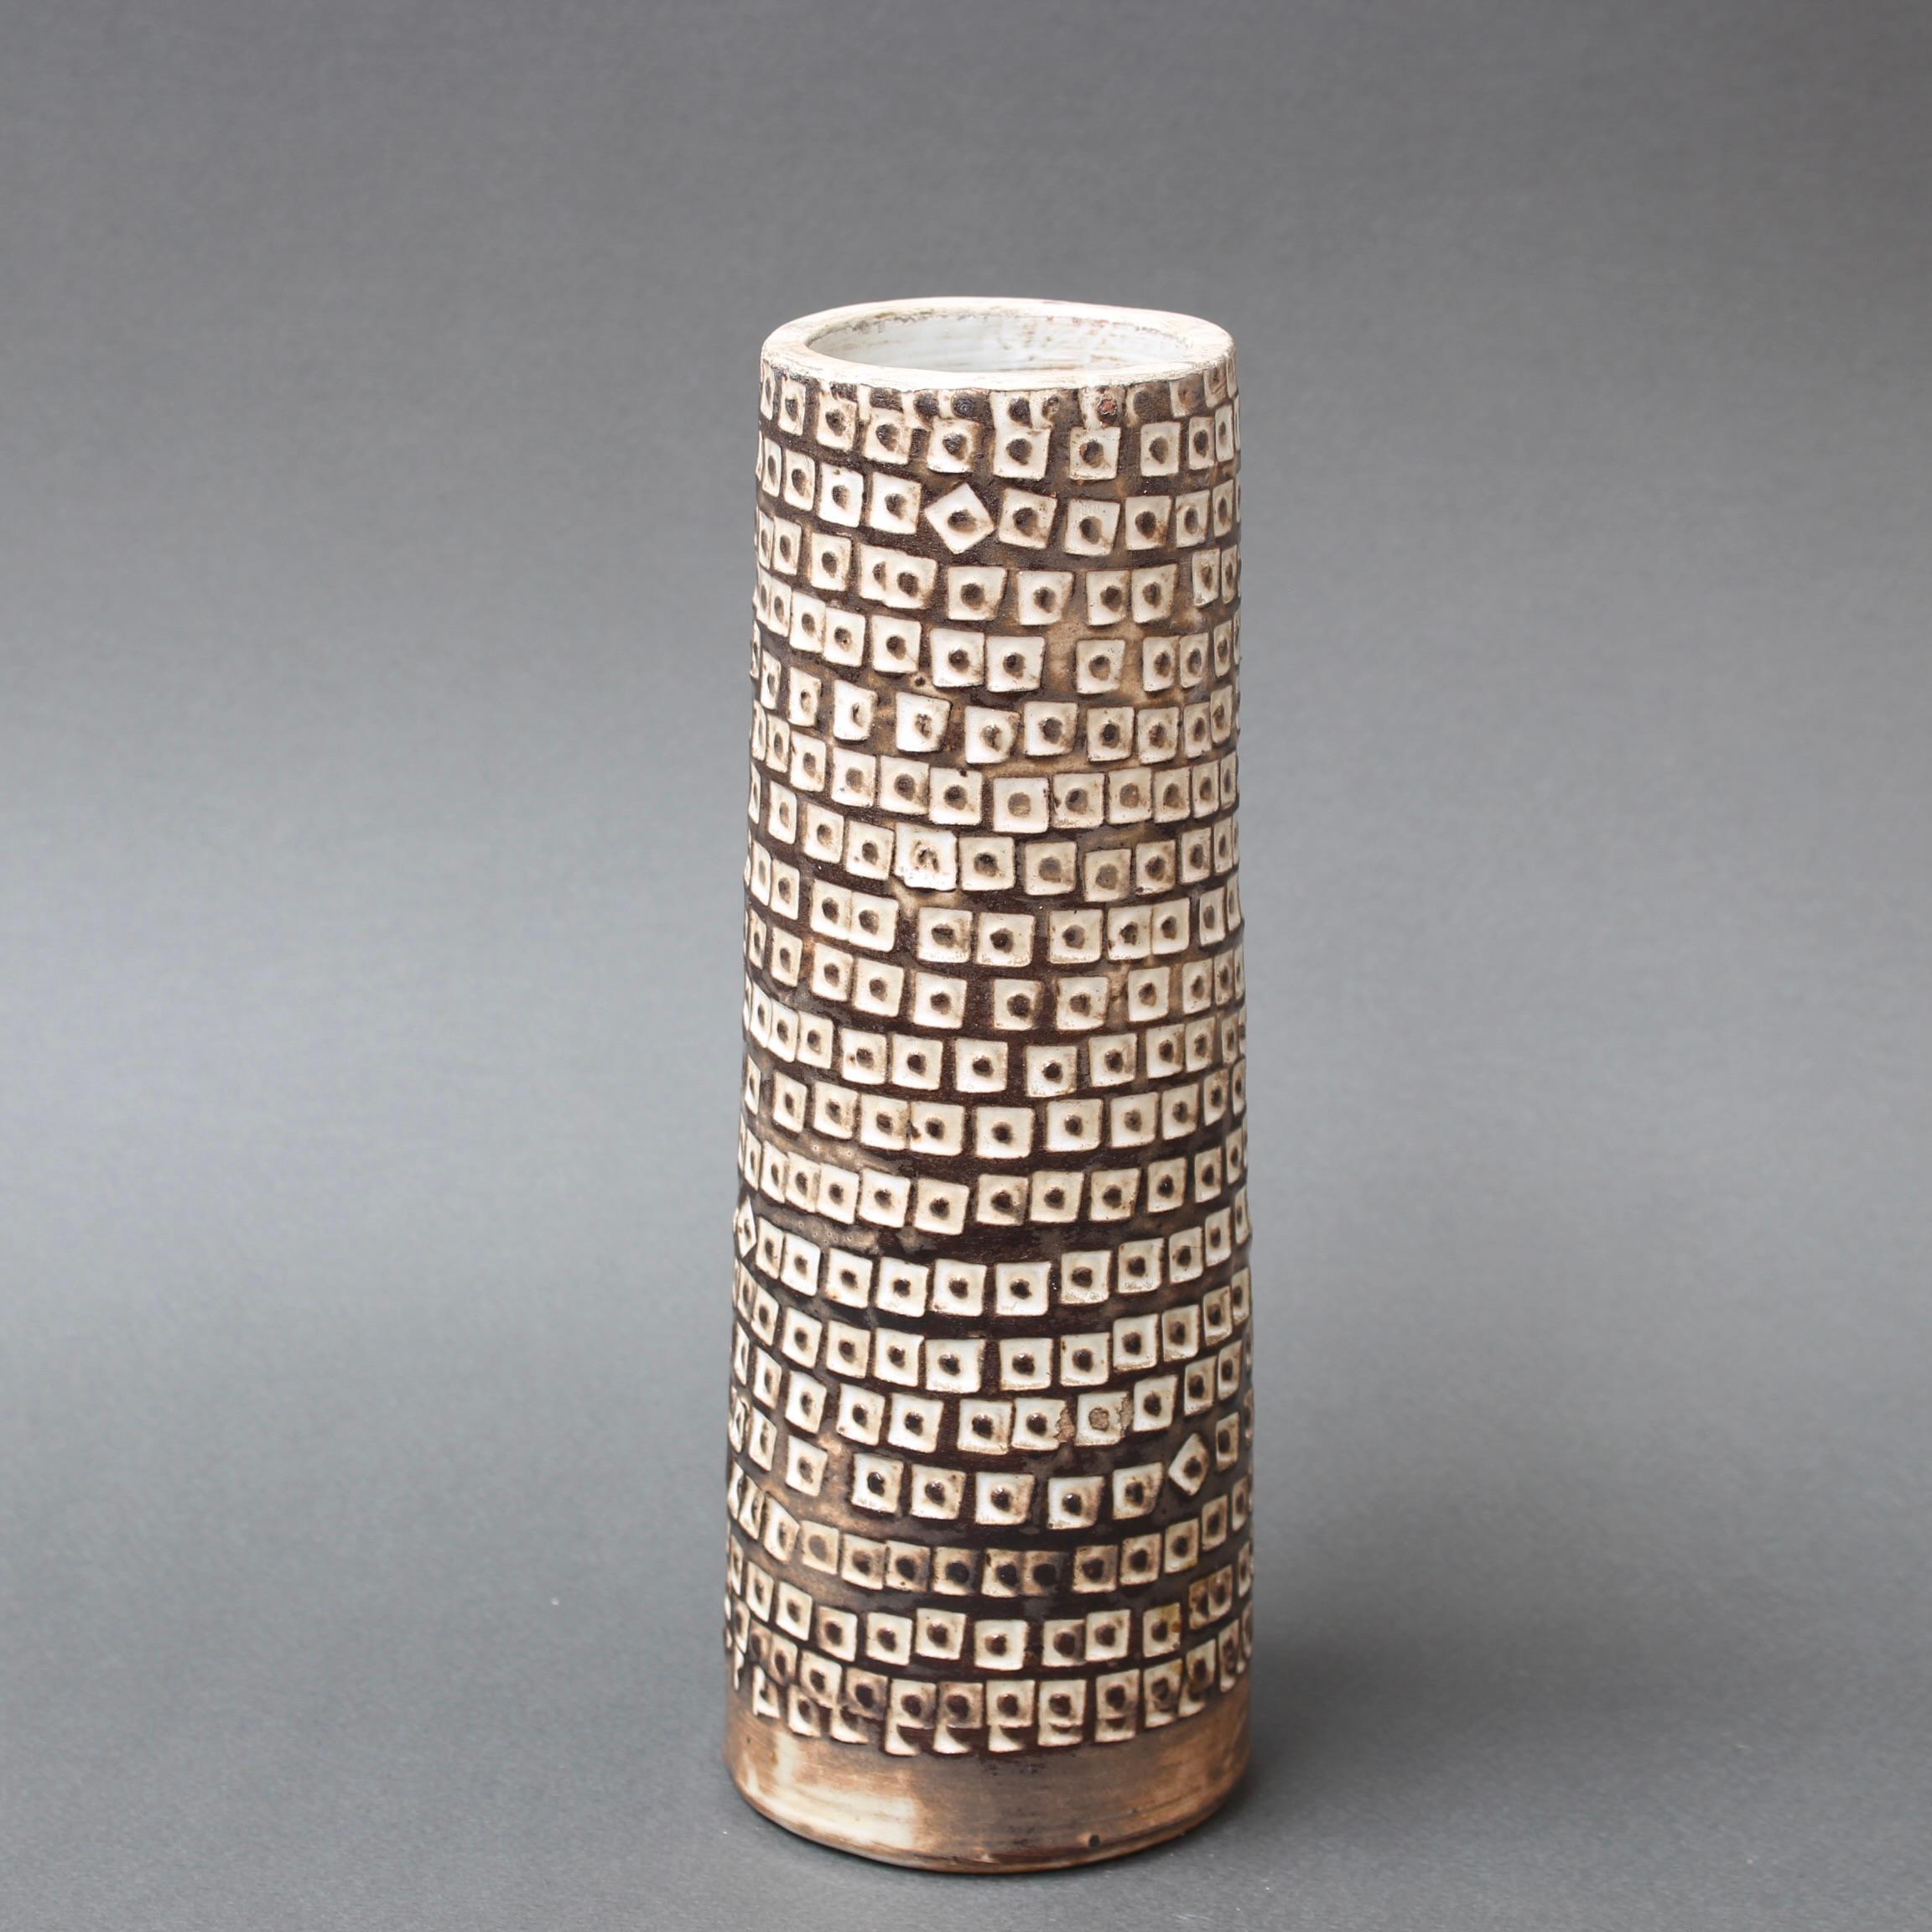 Dekorative zylindrische Blumenvase aus Keramik (um 1960), von Jacques Pouchain. Die Dekoration dieser Vase aus der Mitte des Jahrhunderts hat etwas Stammesmäßiges an sich. Die geometrischen Formen in Weiß, jede mit einem braunen Fleck, bilden ein